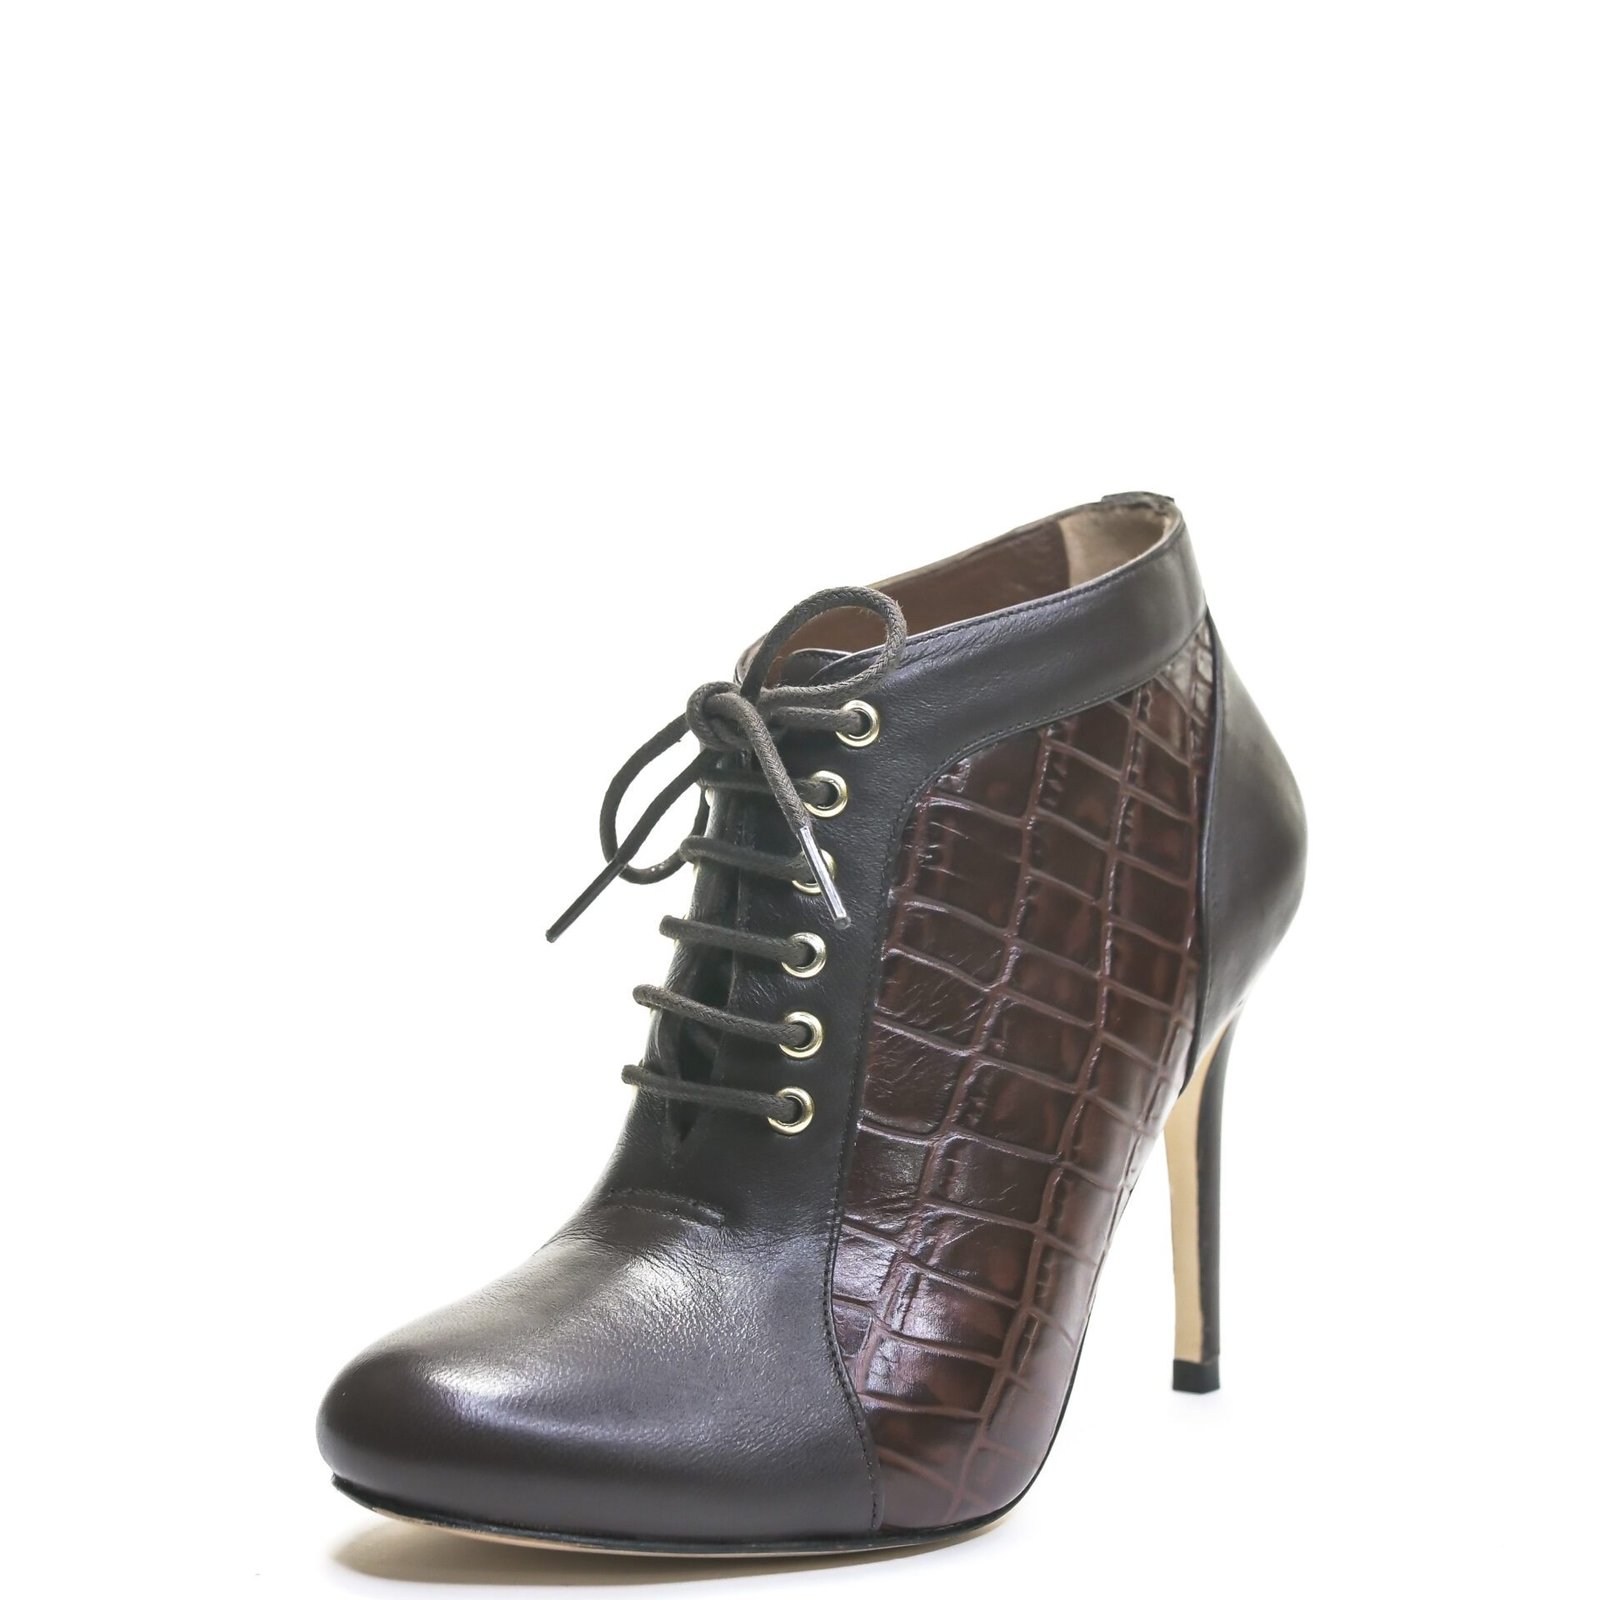 dark brown leather bootie with heel for men & women